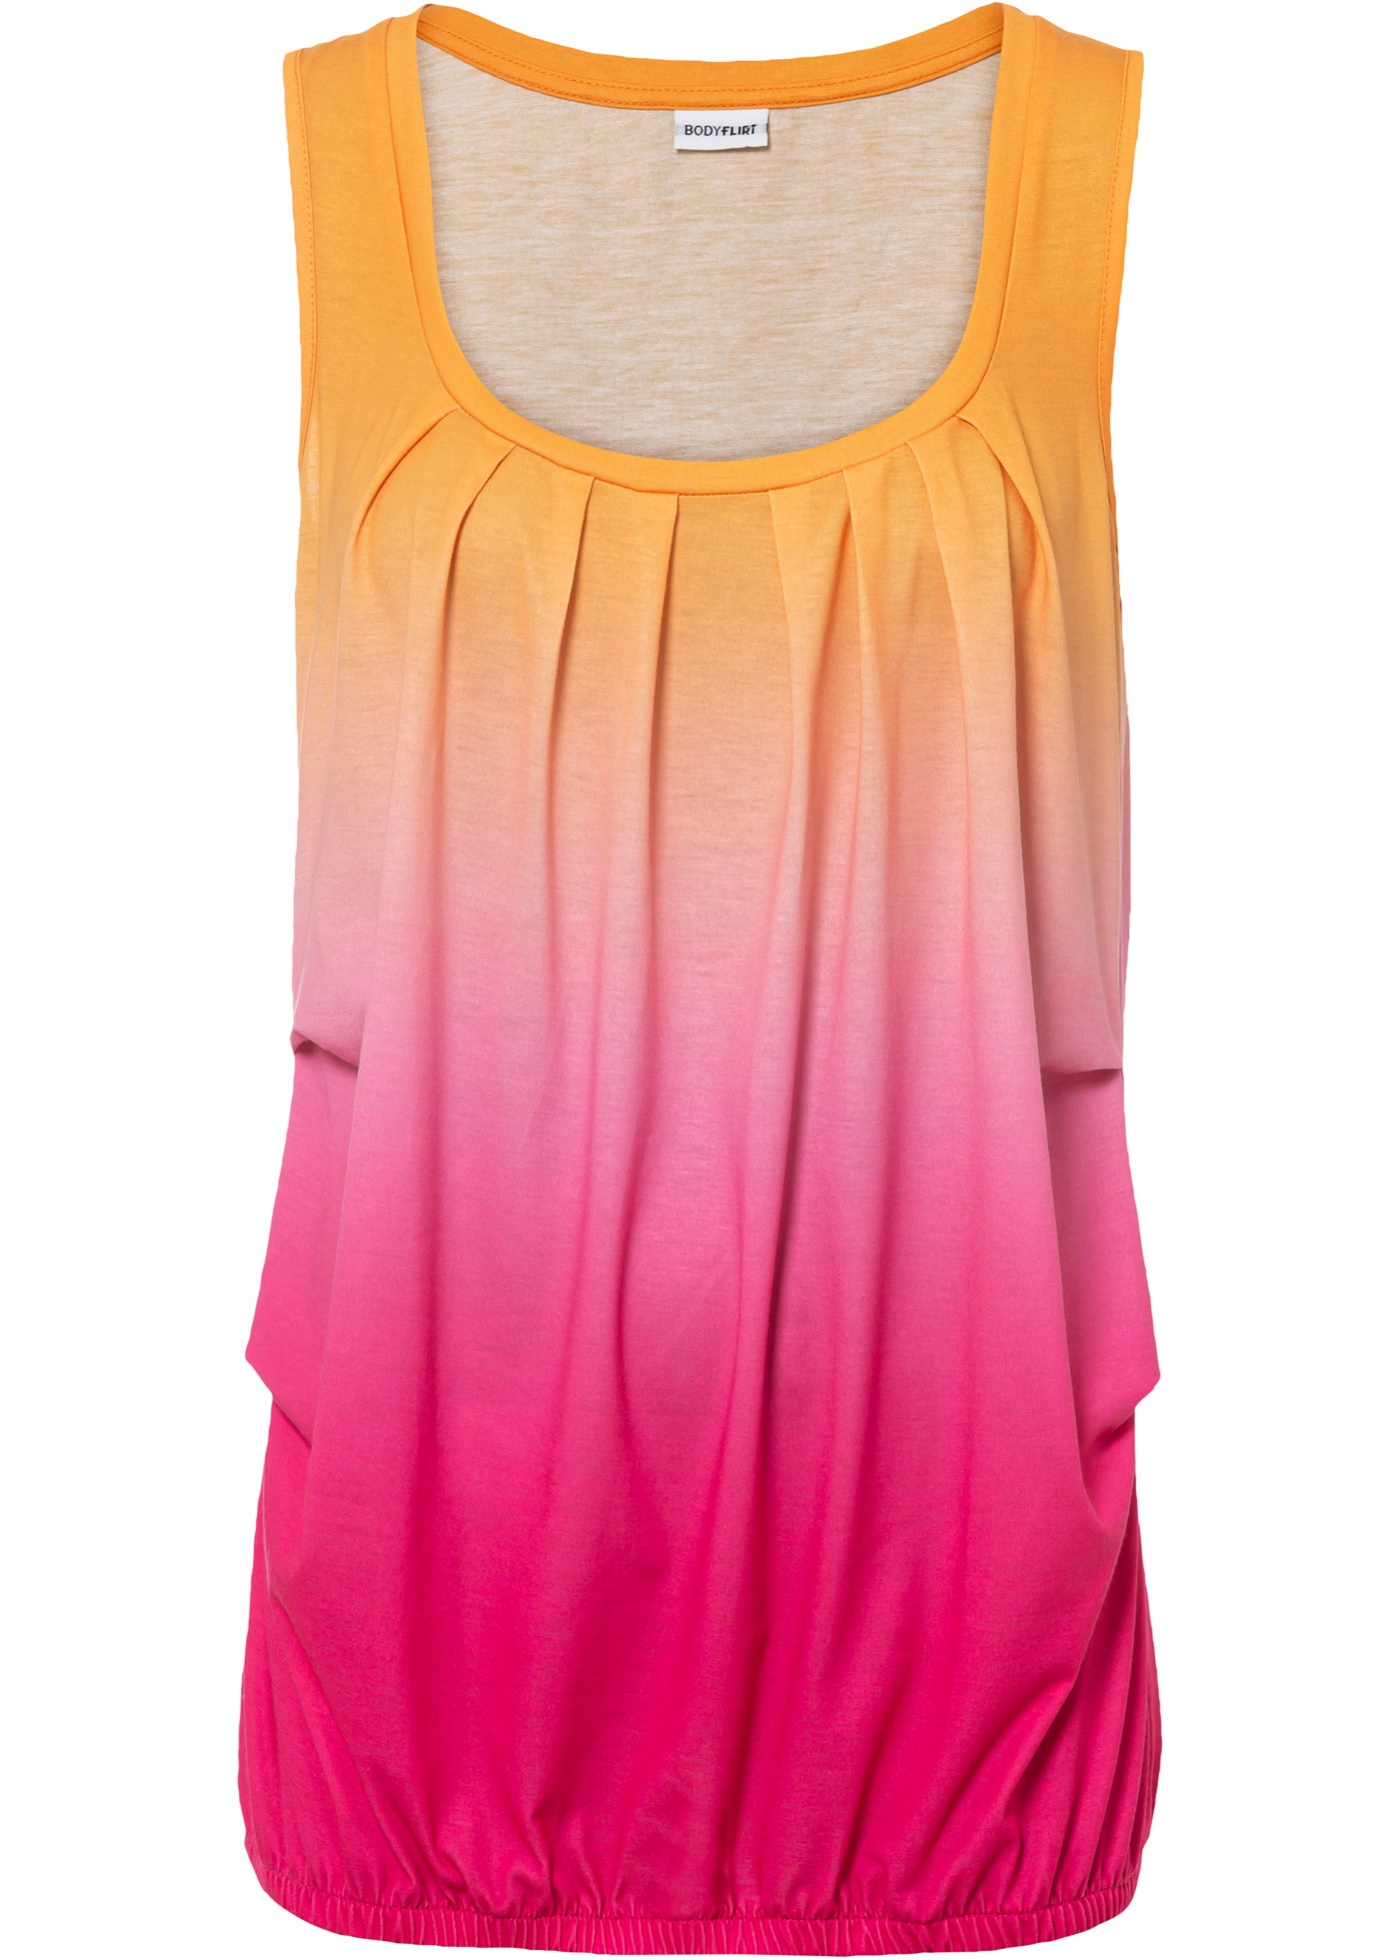 Bequemes Jersey-Top mit schönem Farbverlauf. (97543695) in gelborange / pinklady bedruckt